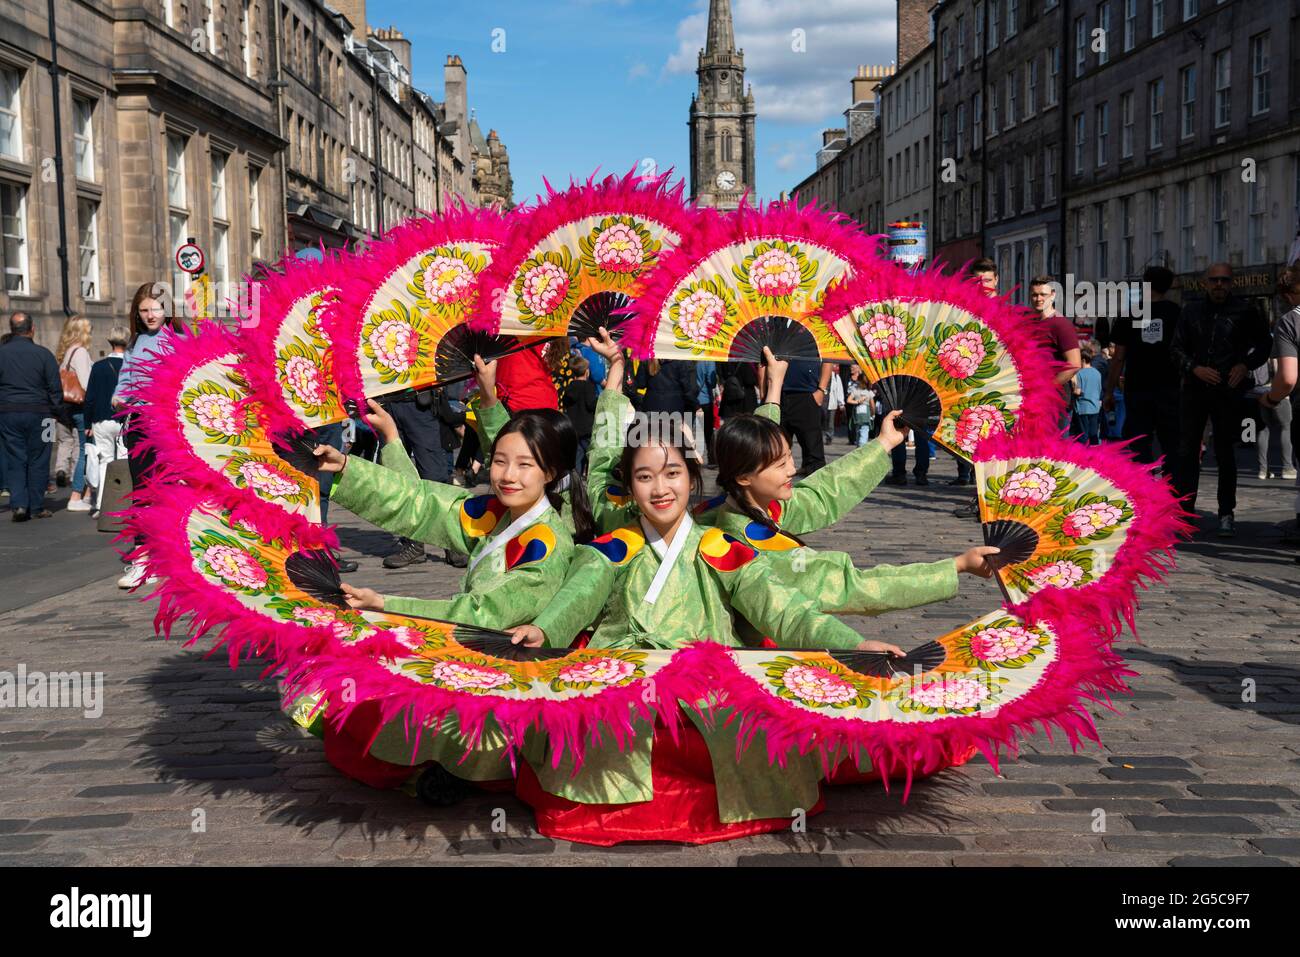 Many tourists on the  Edinburgh Royal Mile to enjoy the many street performances during Fringe festival, Scotland, UK Stock Photo